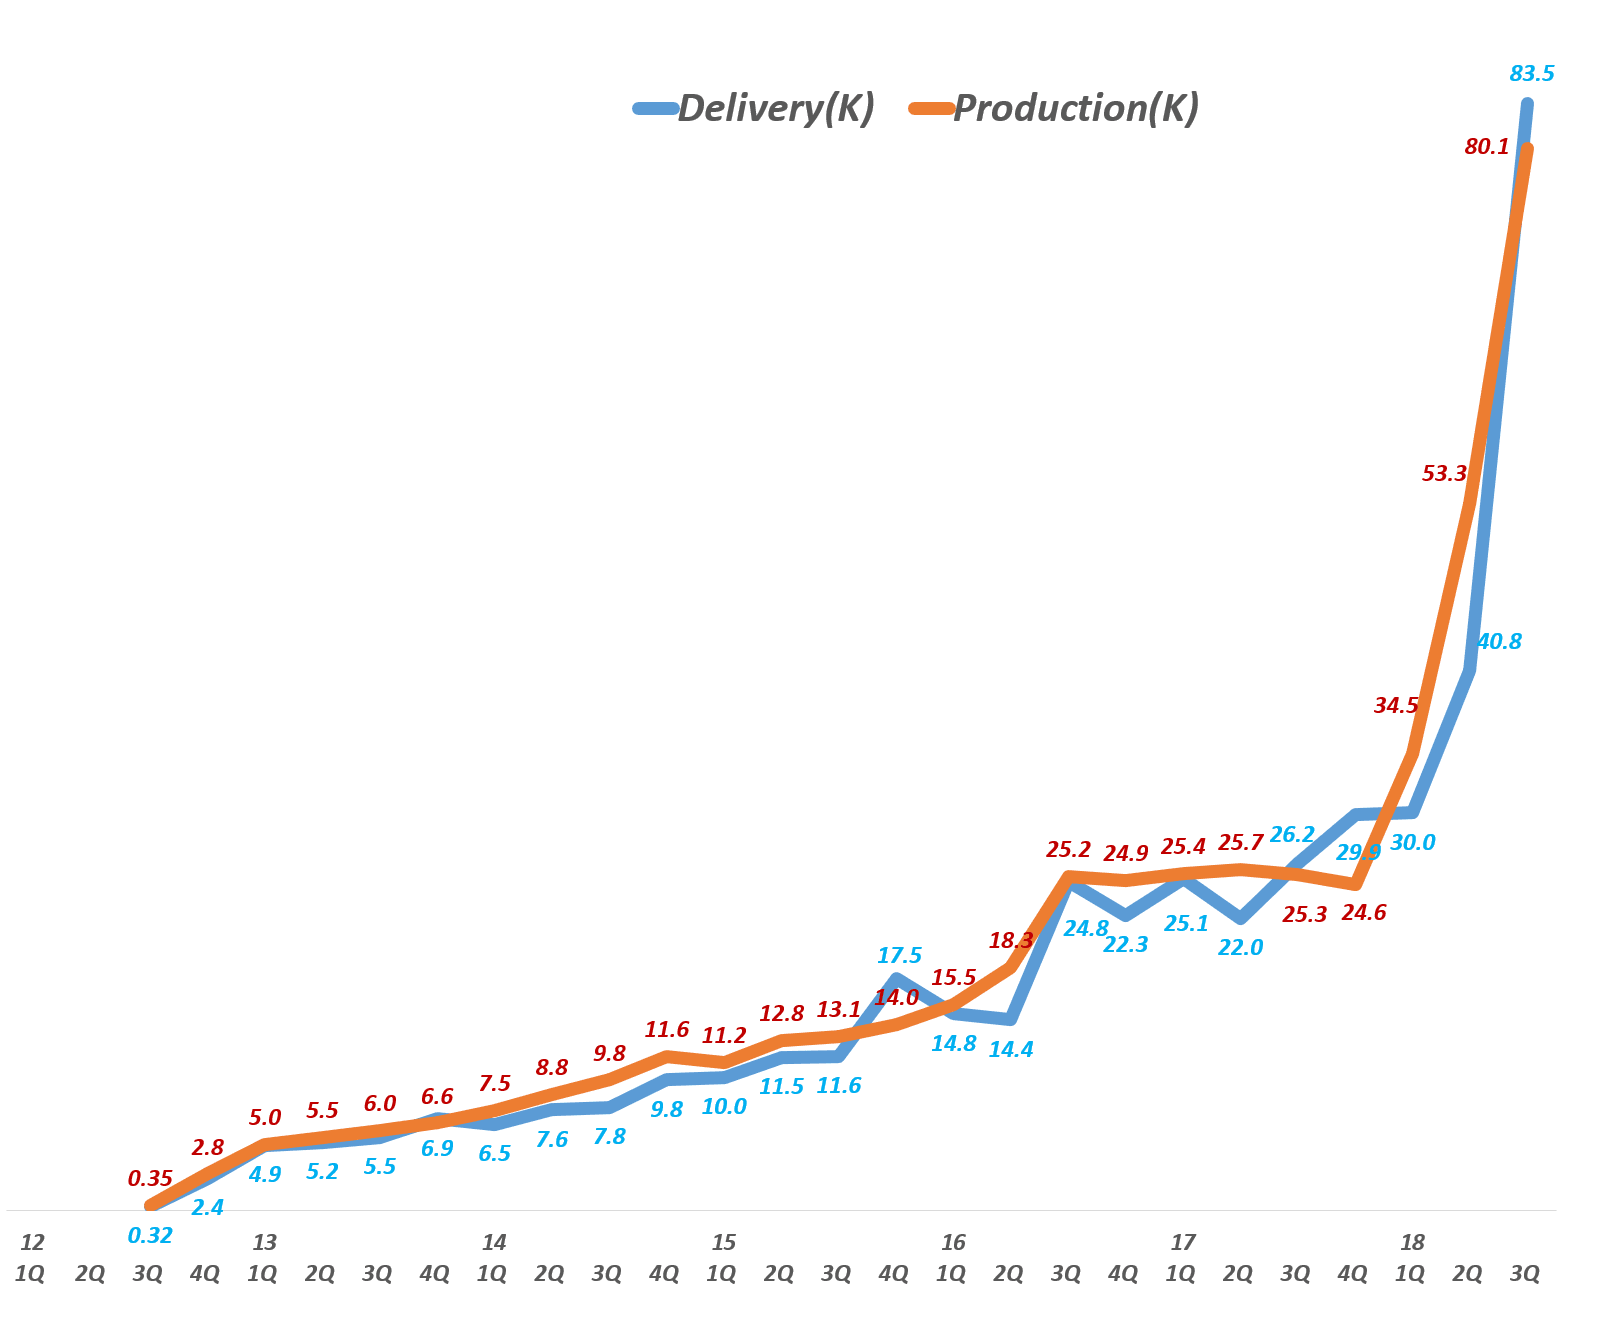 테슬라 분기별 자동차 생산량 및 자동차 배송량 추이 Tesla production & delivery, Graph by Happist